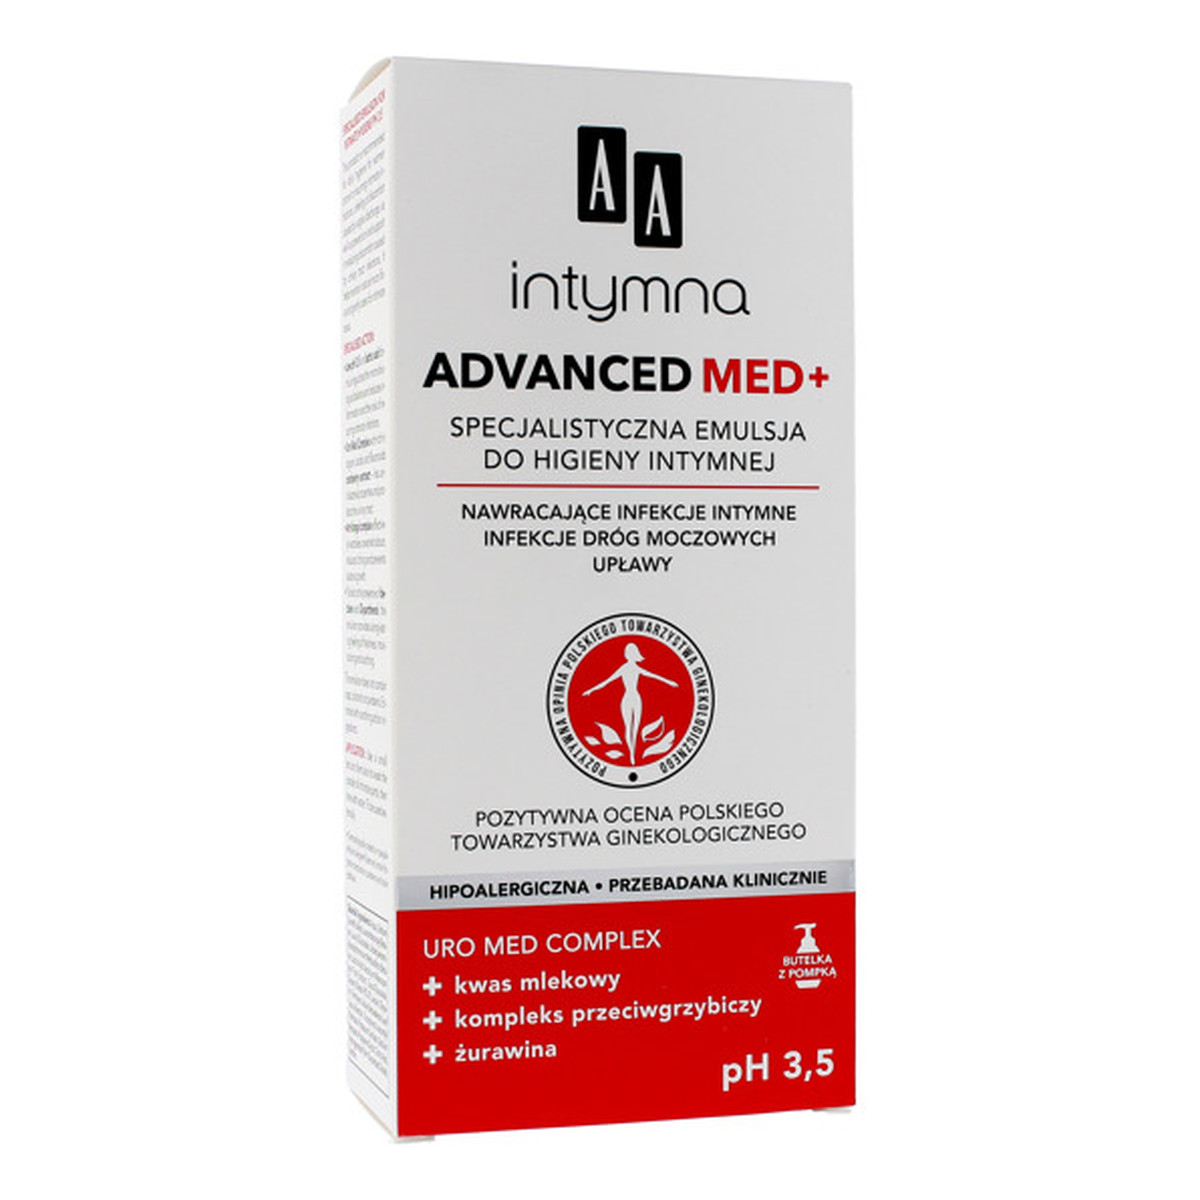 AA Intymna Advanced Med+ Specjalistyczna Emulsja do higieny intymnej pH 3,5 300ml